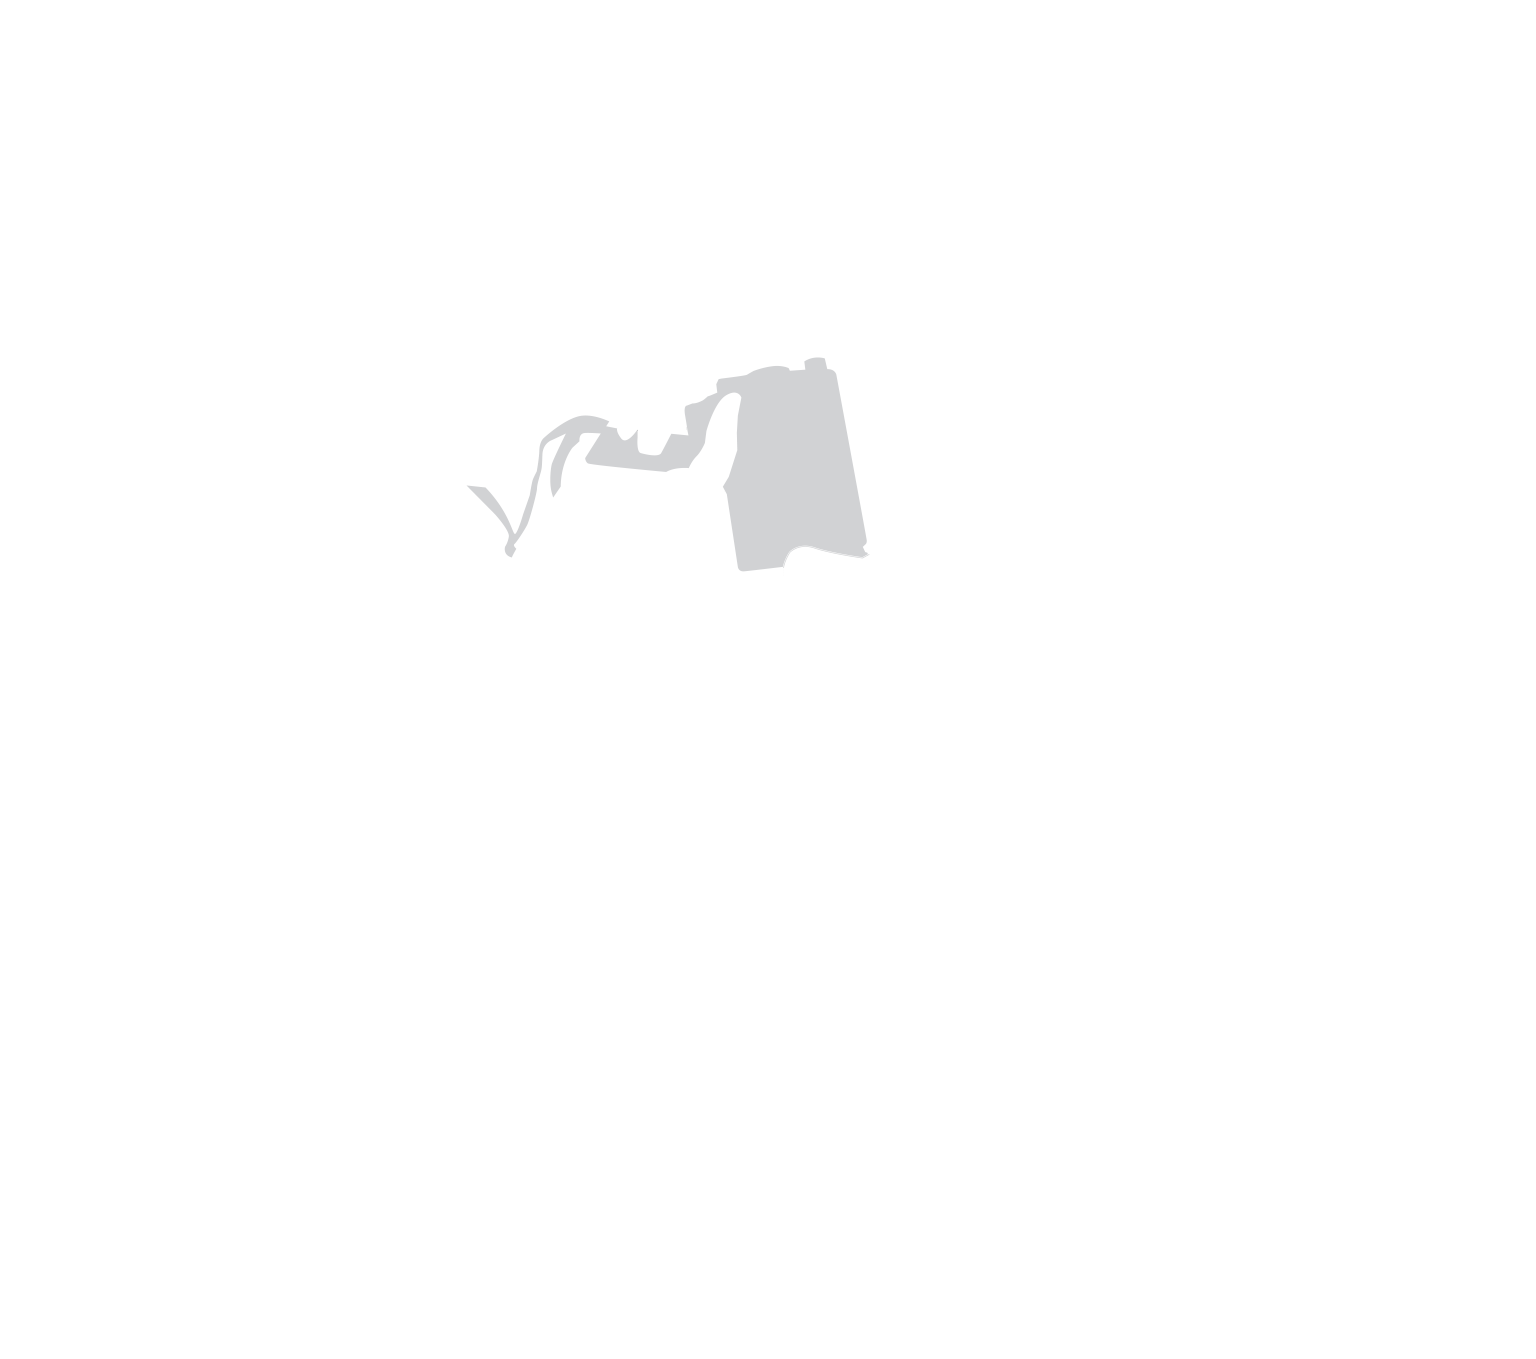 Vito D'Agostino